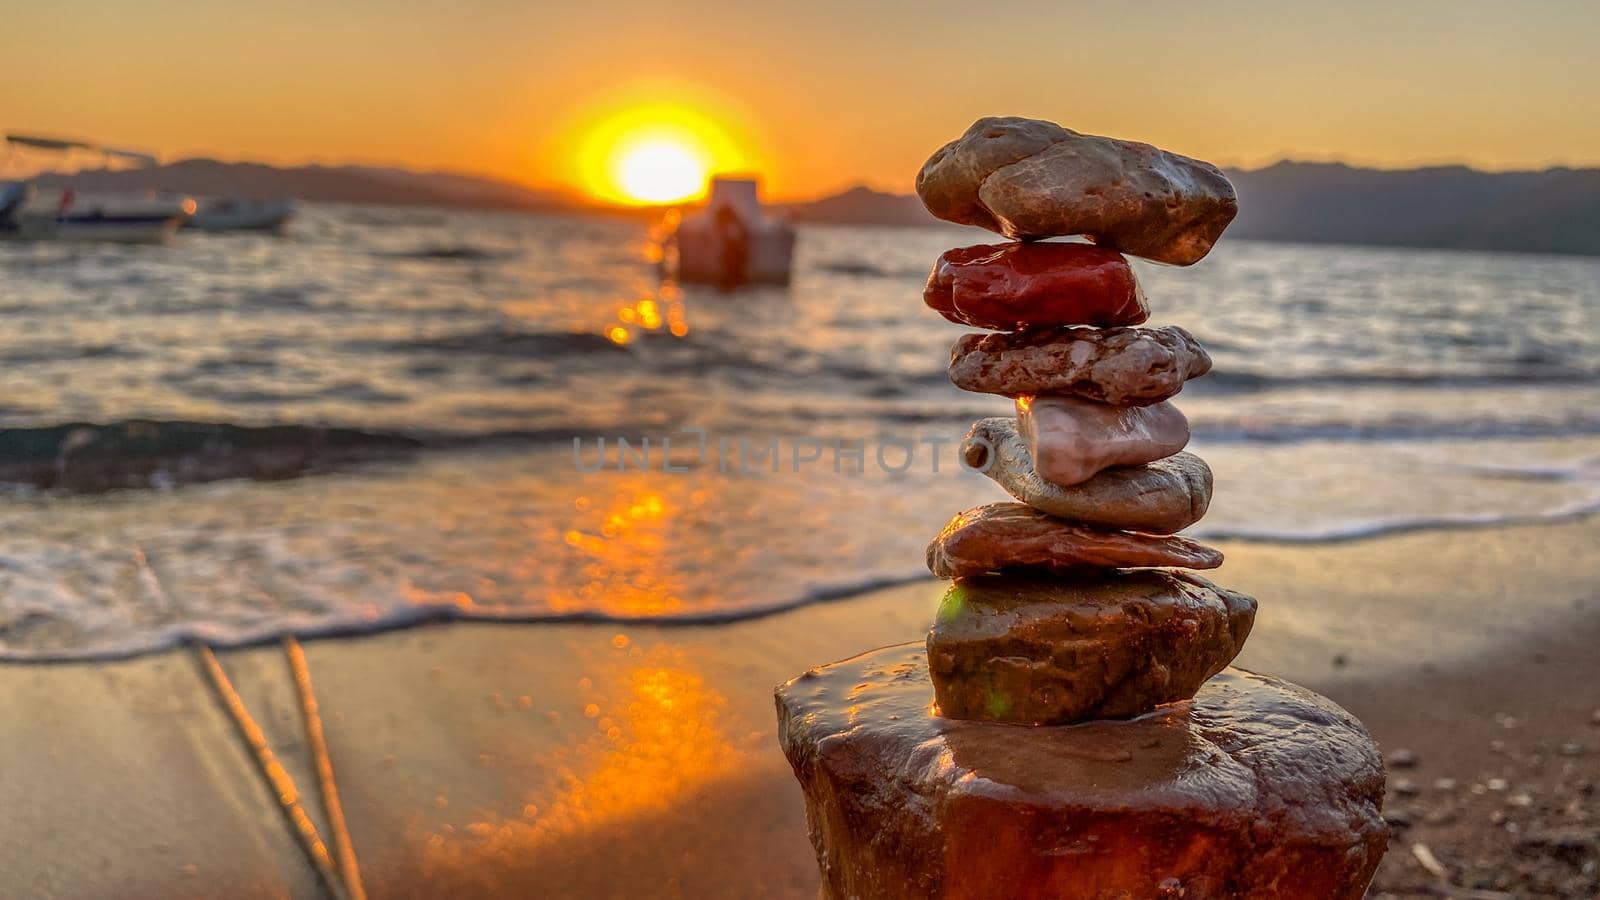 Rock balancing at the beach at sunset close up view